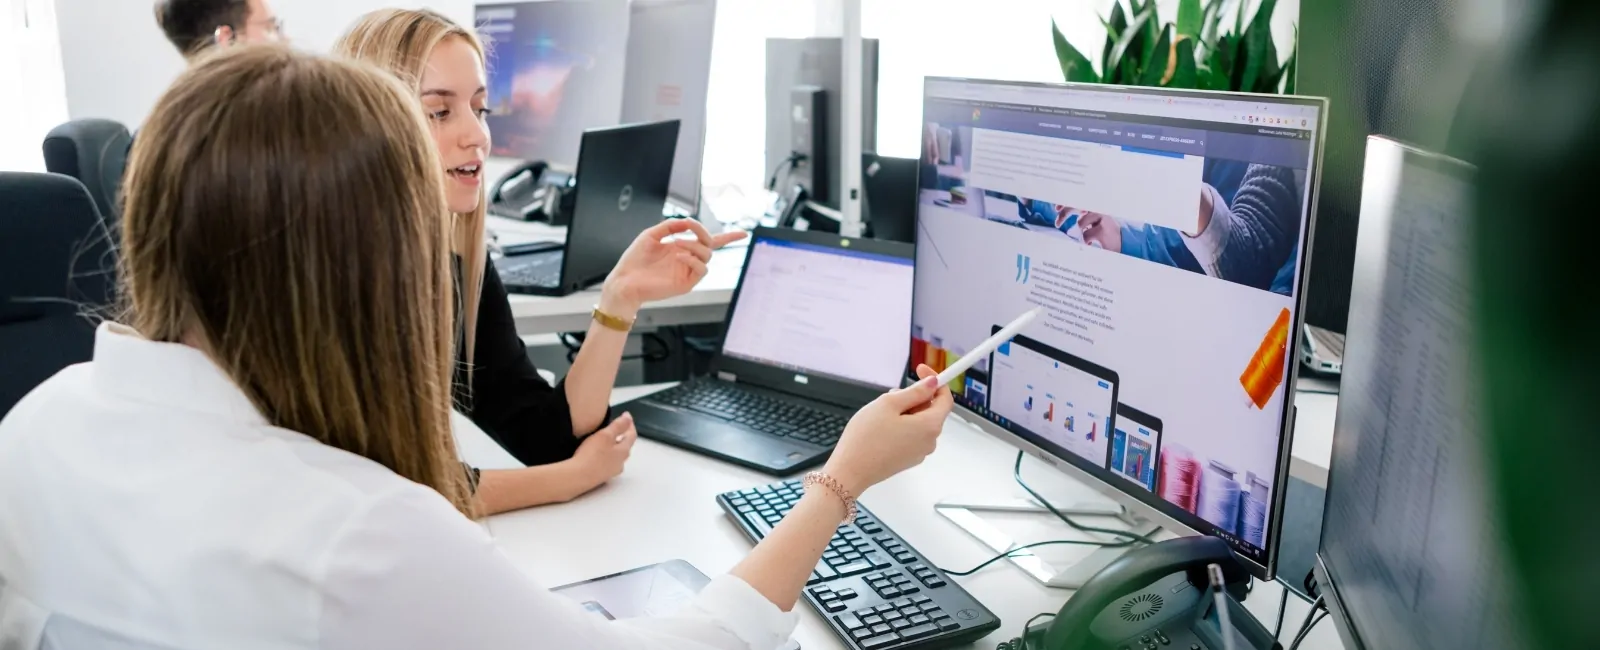 Zwei Mitarbeiter betrachten ein Webdesign auf einem Rechner